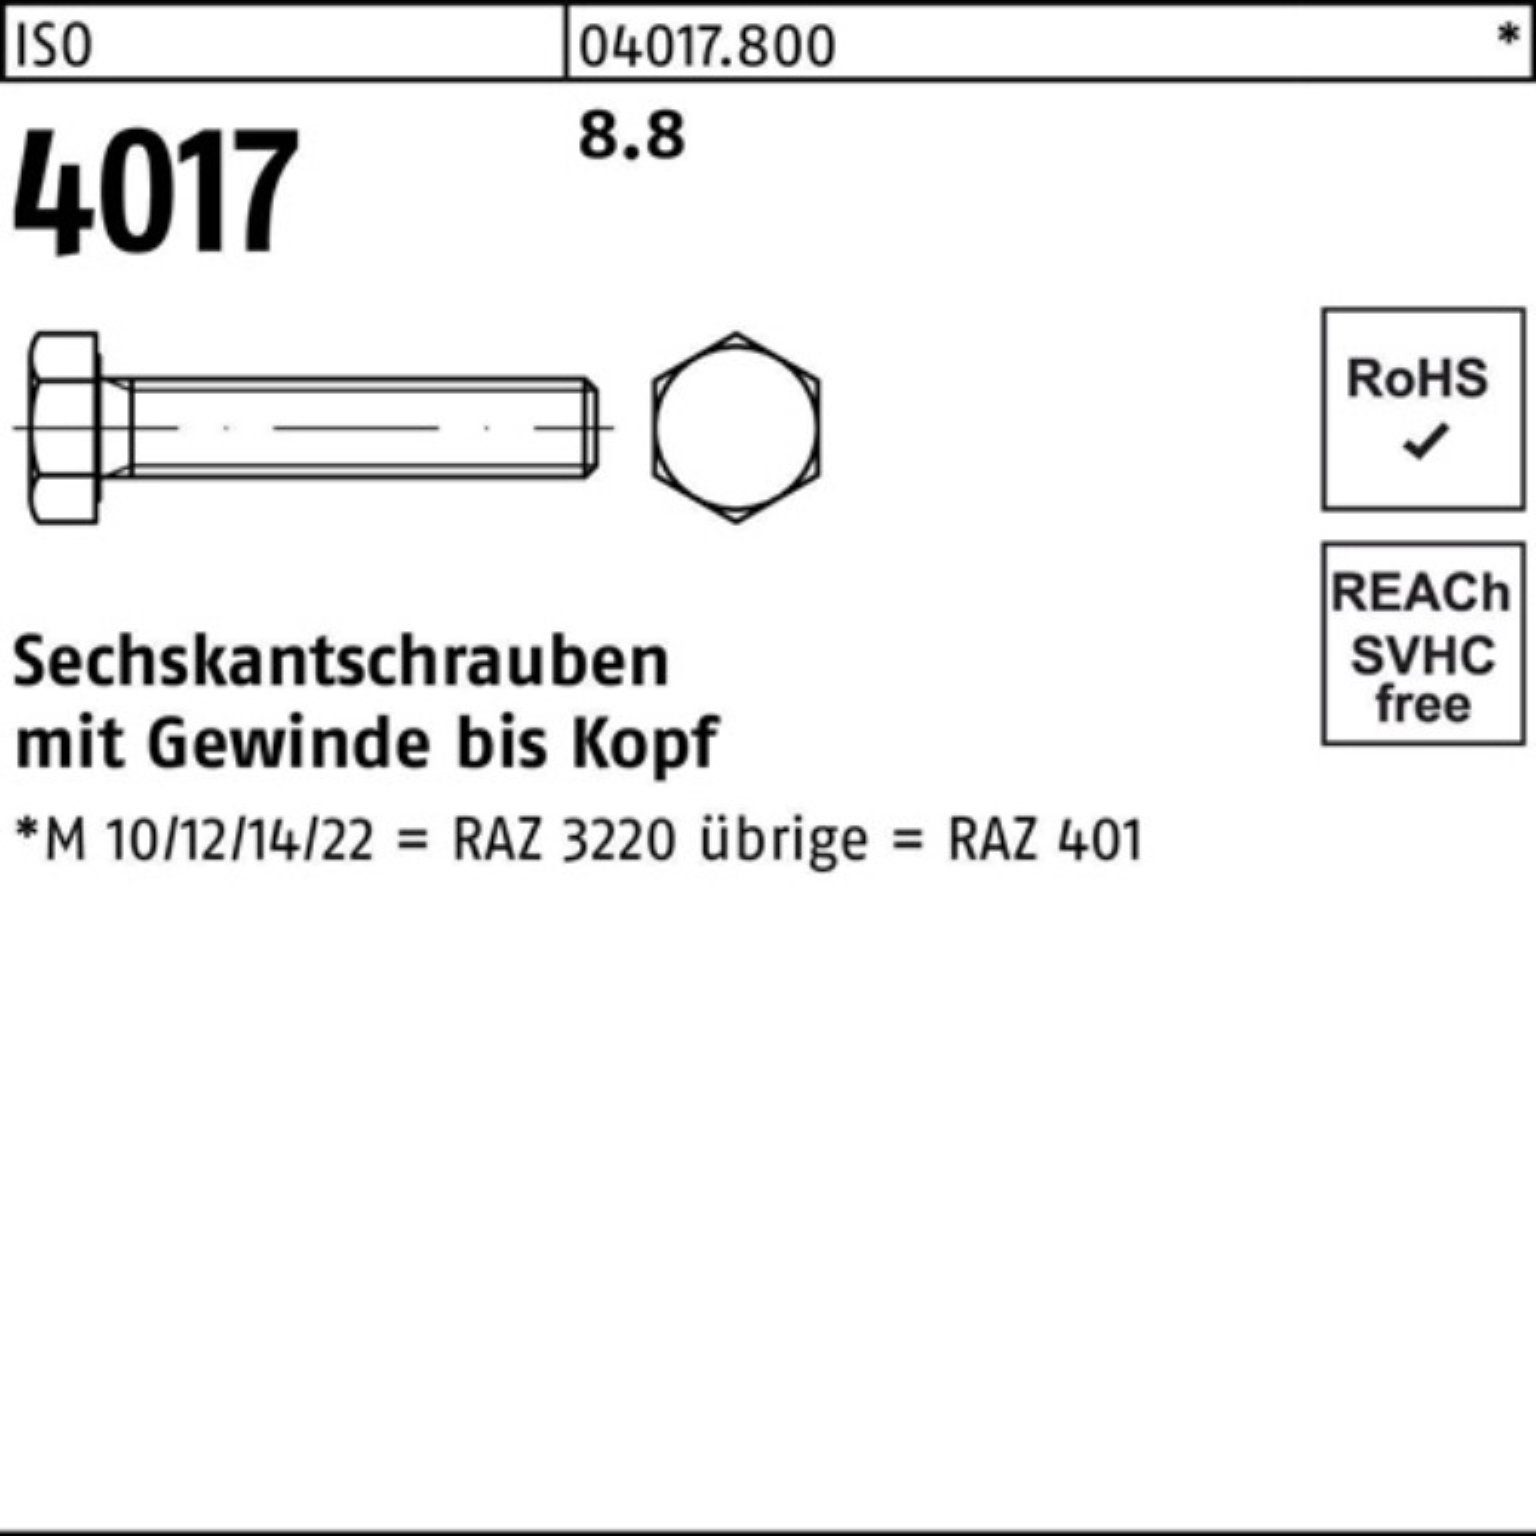 Bufab Sechskantschraube 100er Pack 40 Stück VG 110 Sechskantschraube 4017 M8x ISO 100 8.8 ISO